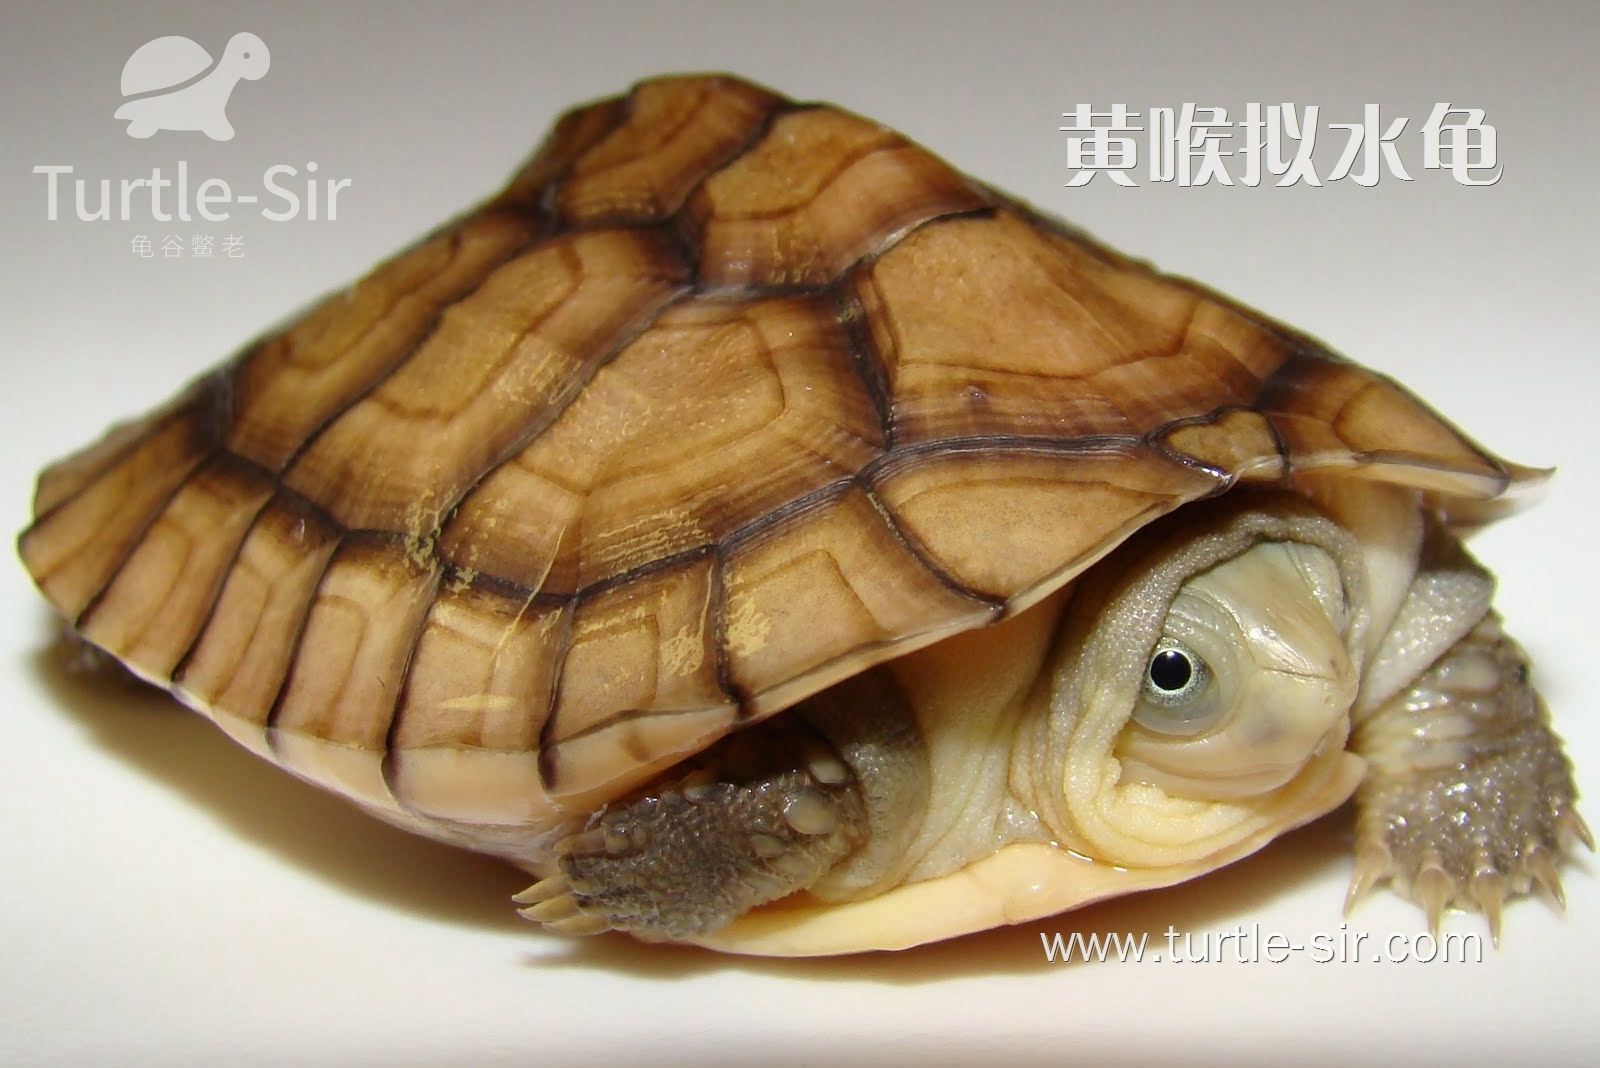 教你如何为黄喉拟水龟准备一个适合它们生育的环境「龟谷鳖老」